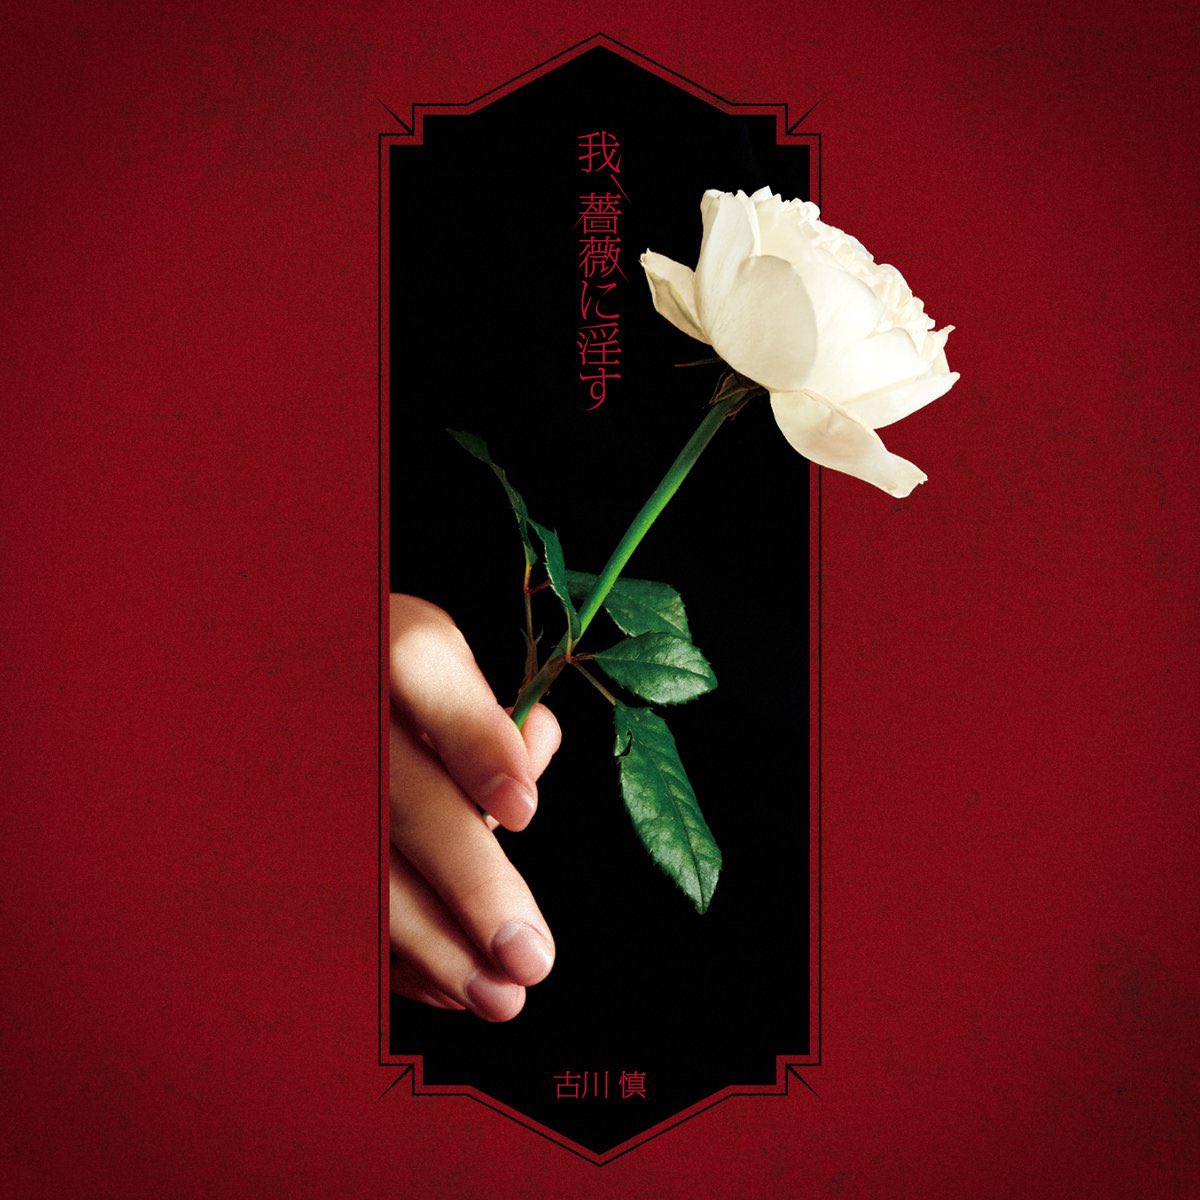 『古川慎 - 我、薔薇に淫す』収録の『我、薔薇に淫す』ジャケット